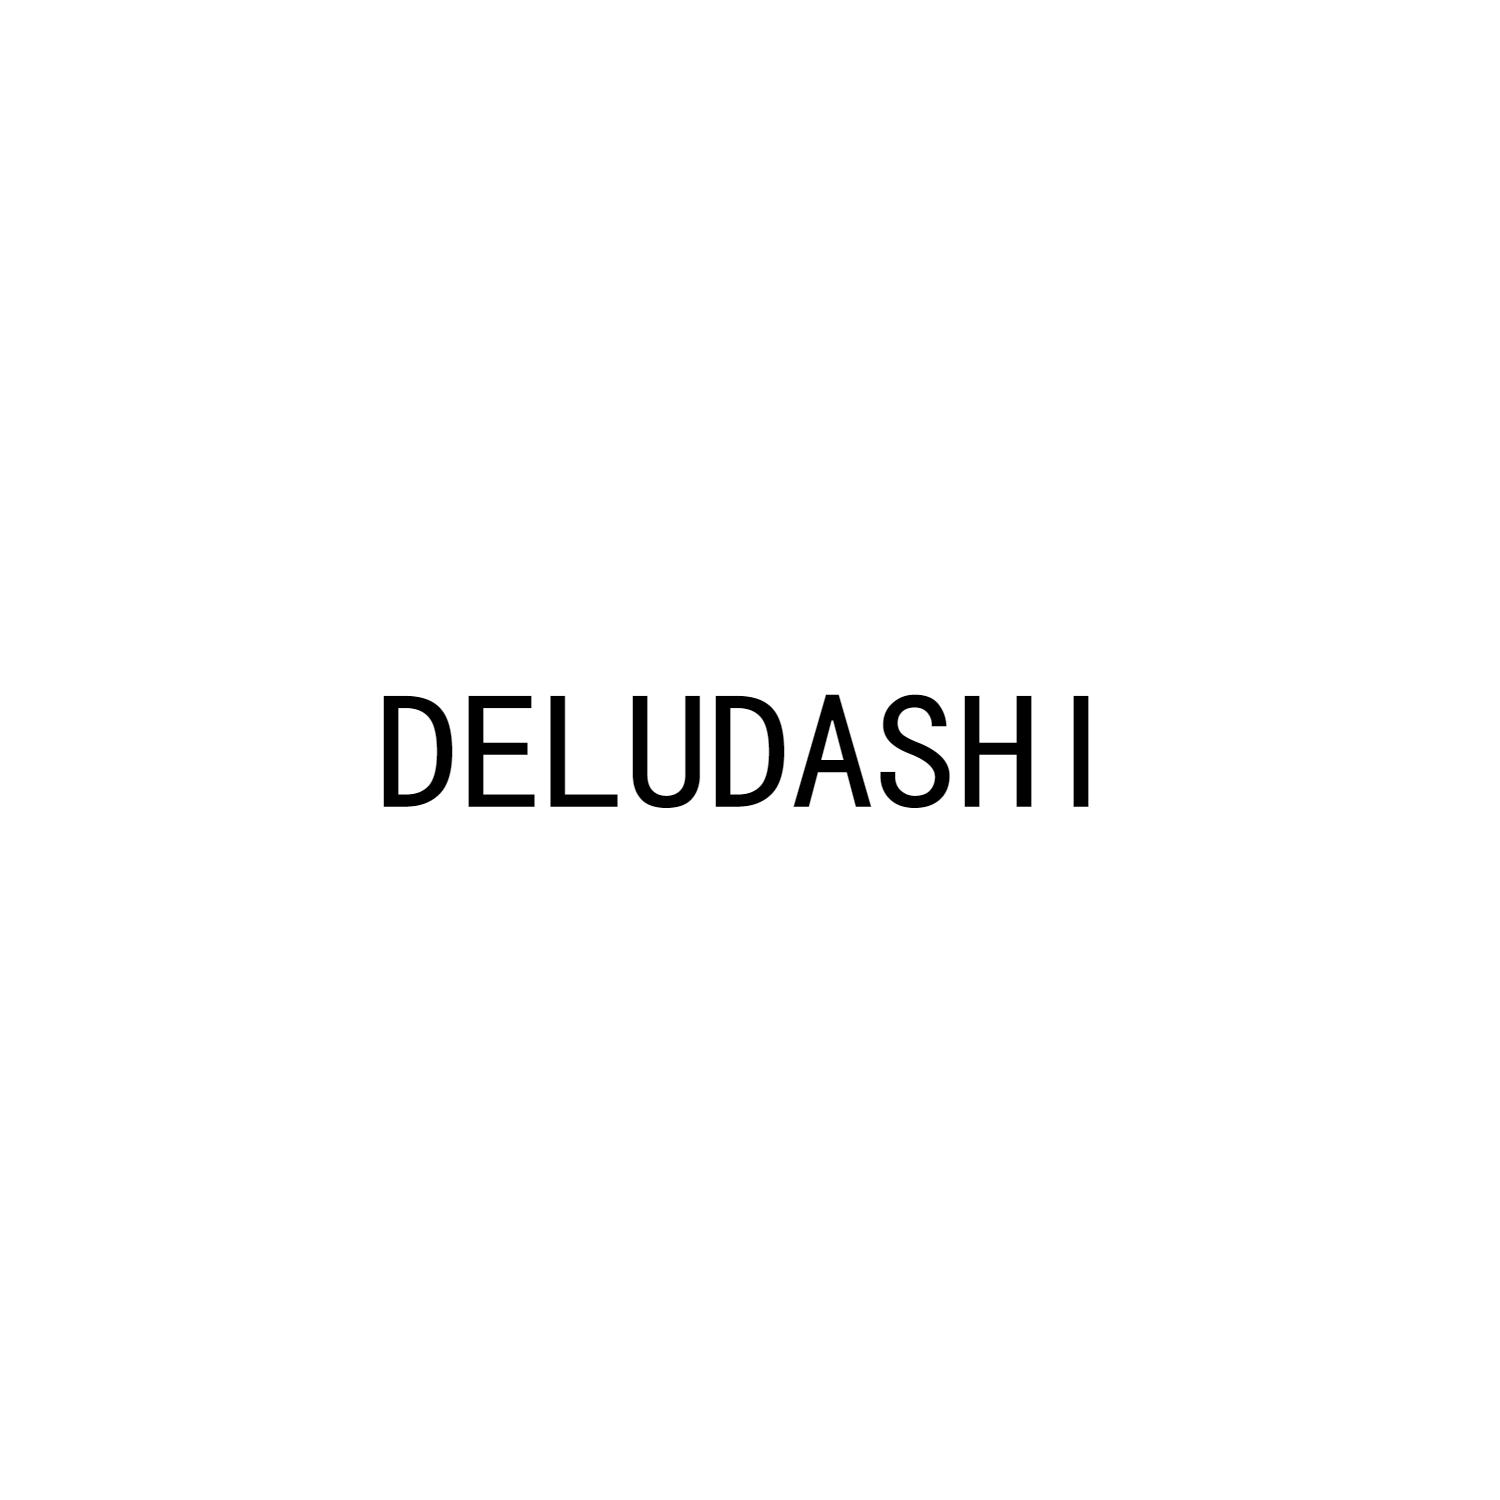 DELUDASHI